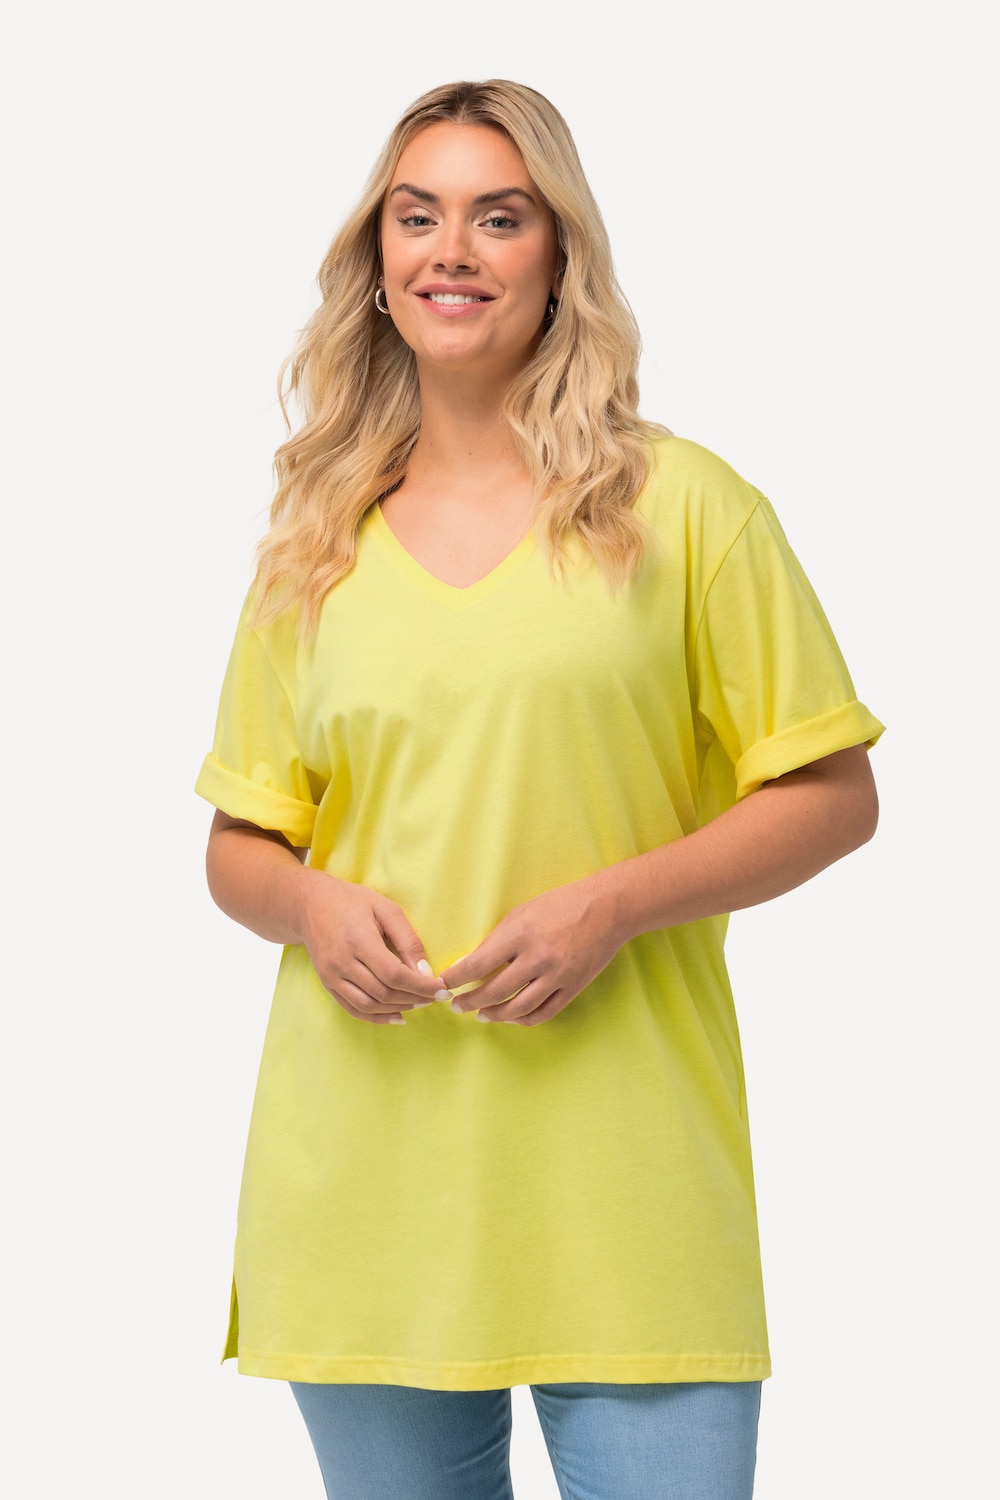 Grote Maten T-Shirt, Dames, geel, Maat: 42/44, Katoen/Viscose, Ulla Popken